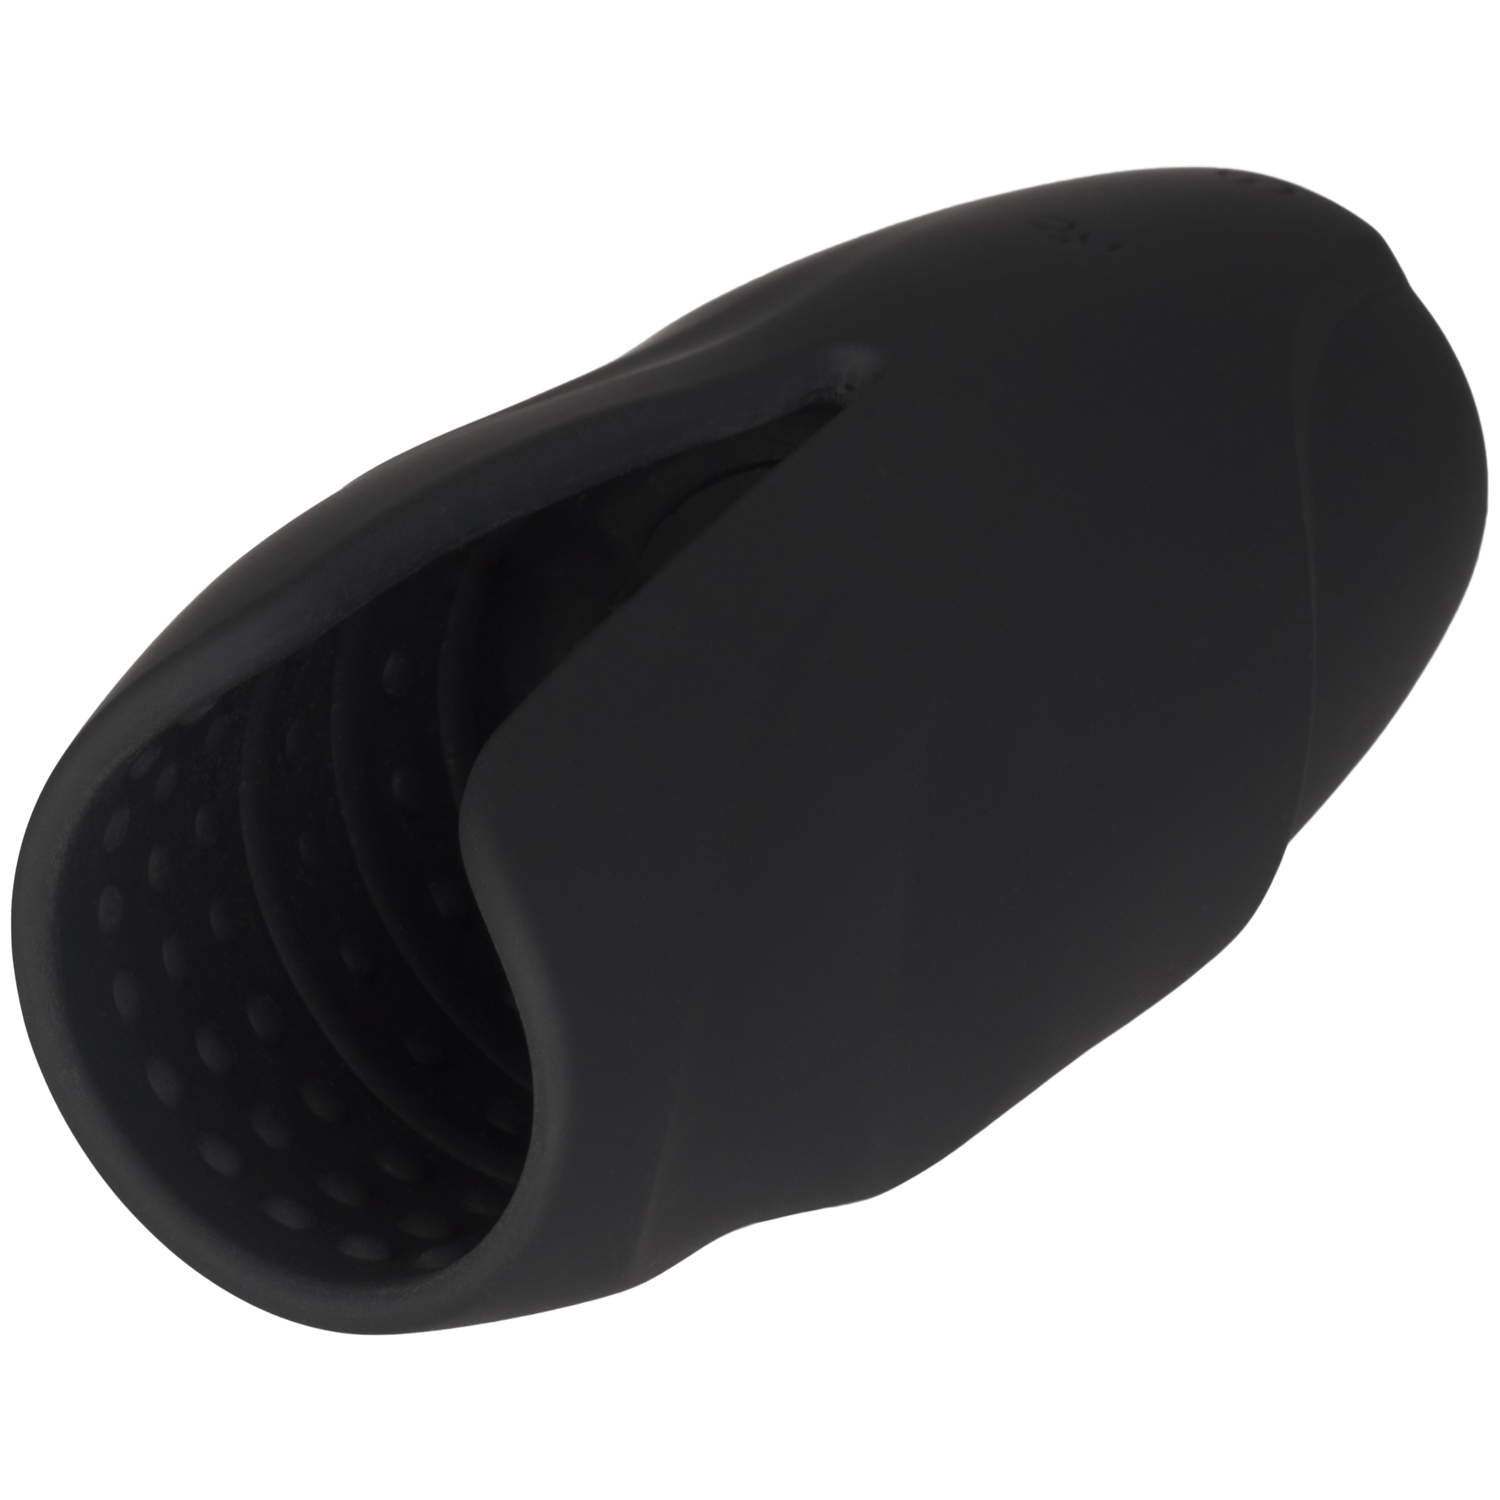 MR.MEMBR Intense Texture Penis Vibrator - Black